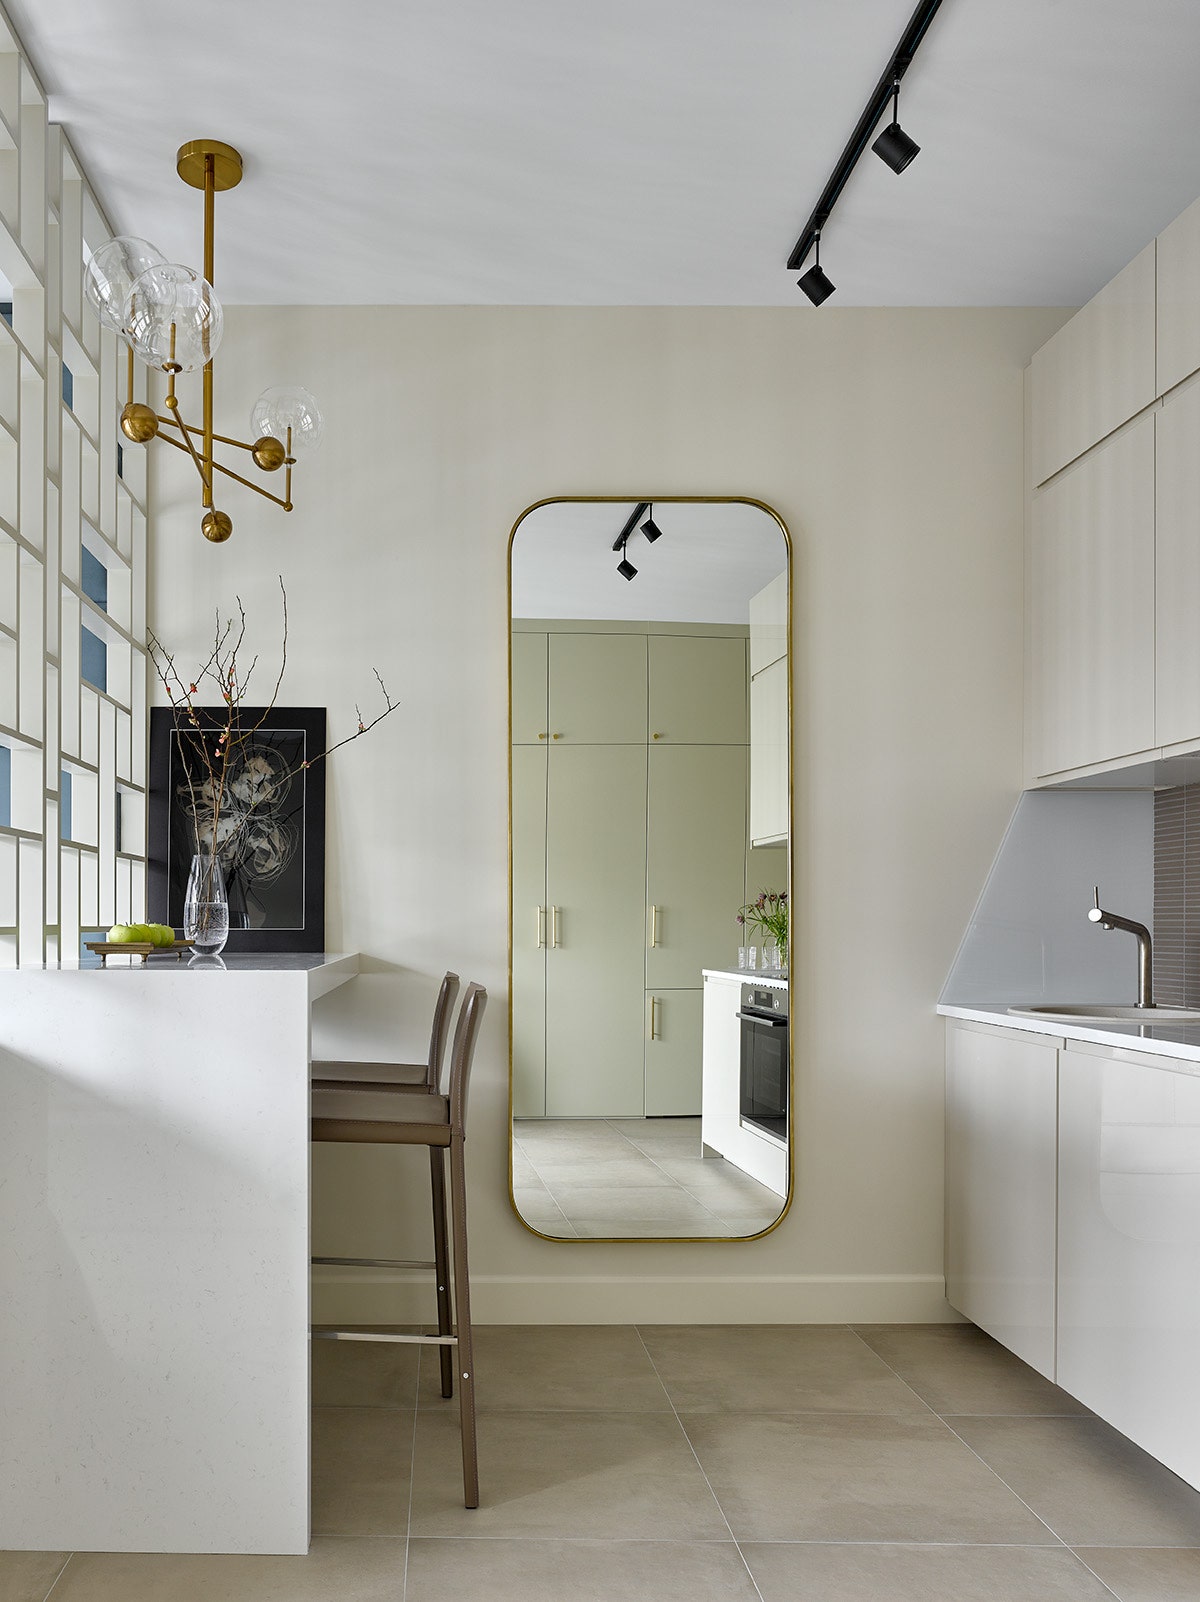 Кухня. Кухонная мебель IKEA кожаные стулья BoСoncept. Зеркало аксессуары фурнитура из латуни и декор выполнены в...